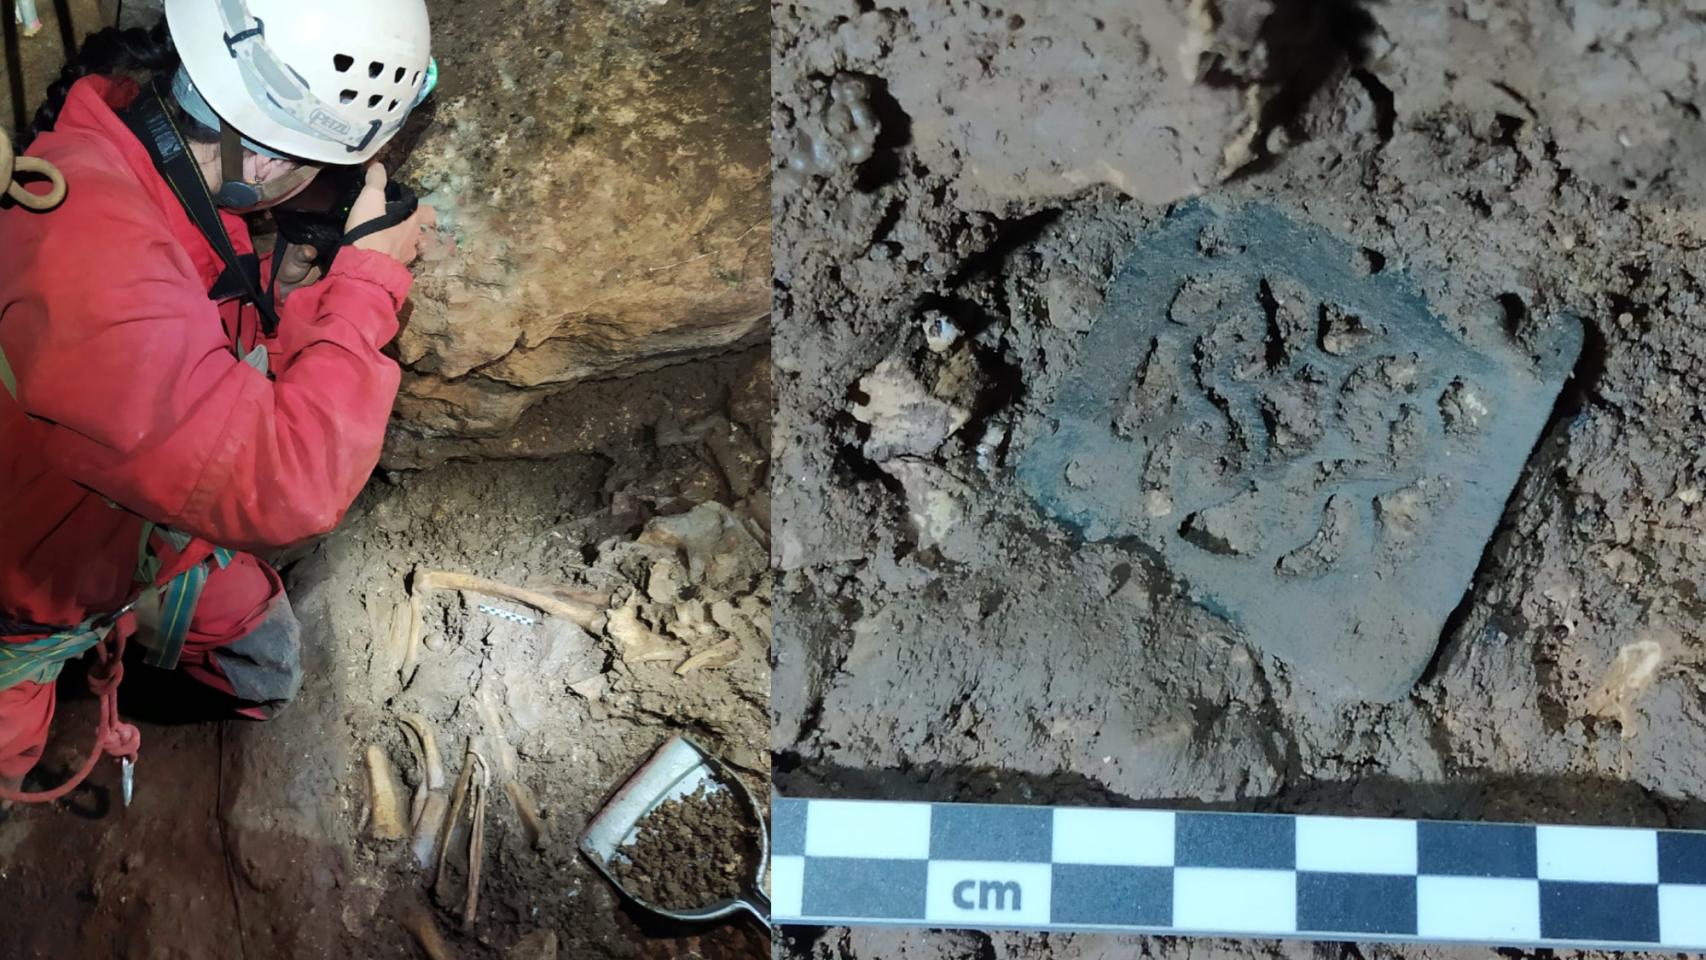 Hallazgo de restos humanos en la cueva de La Cerrosa y la hebilla del cinturón. Foto: Susana de Luis